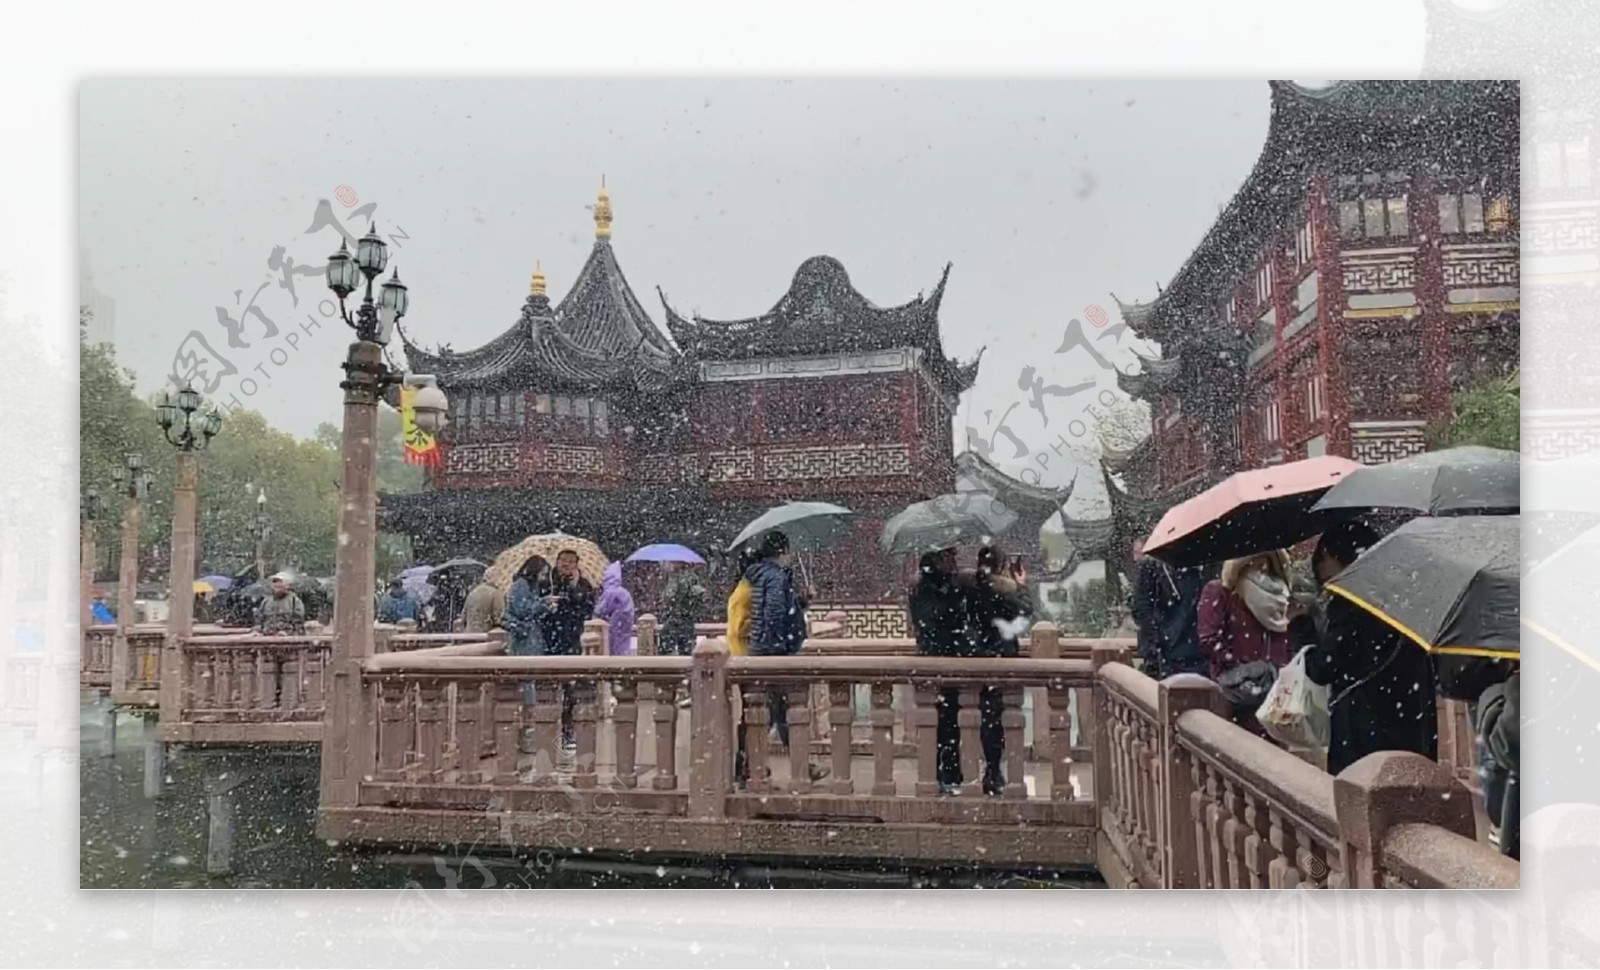 上海豫园2018雪景